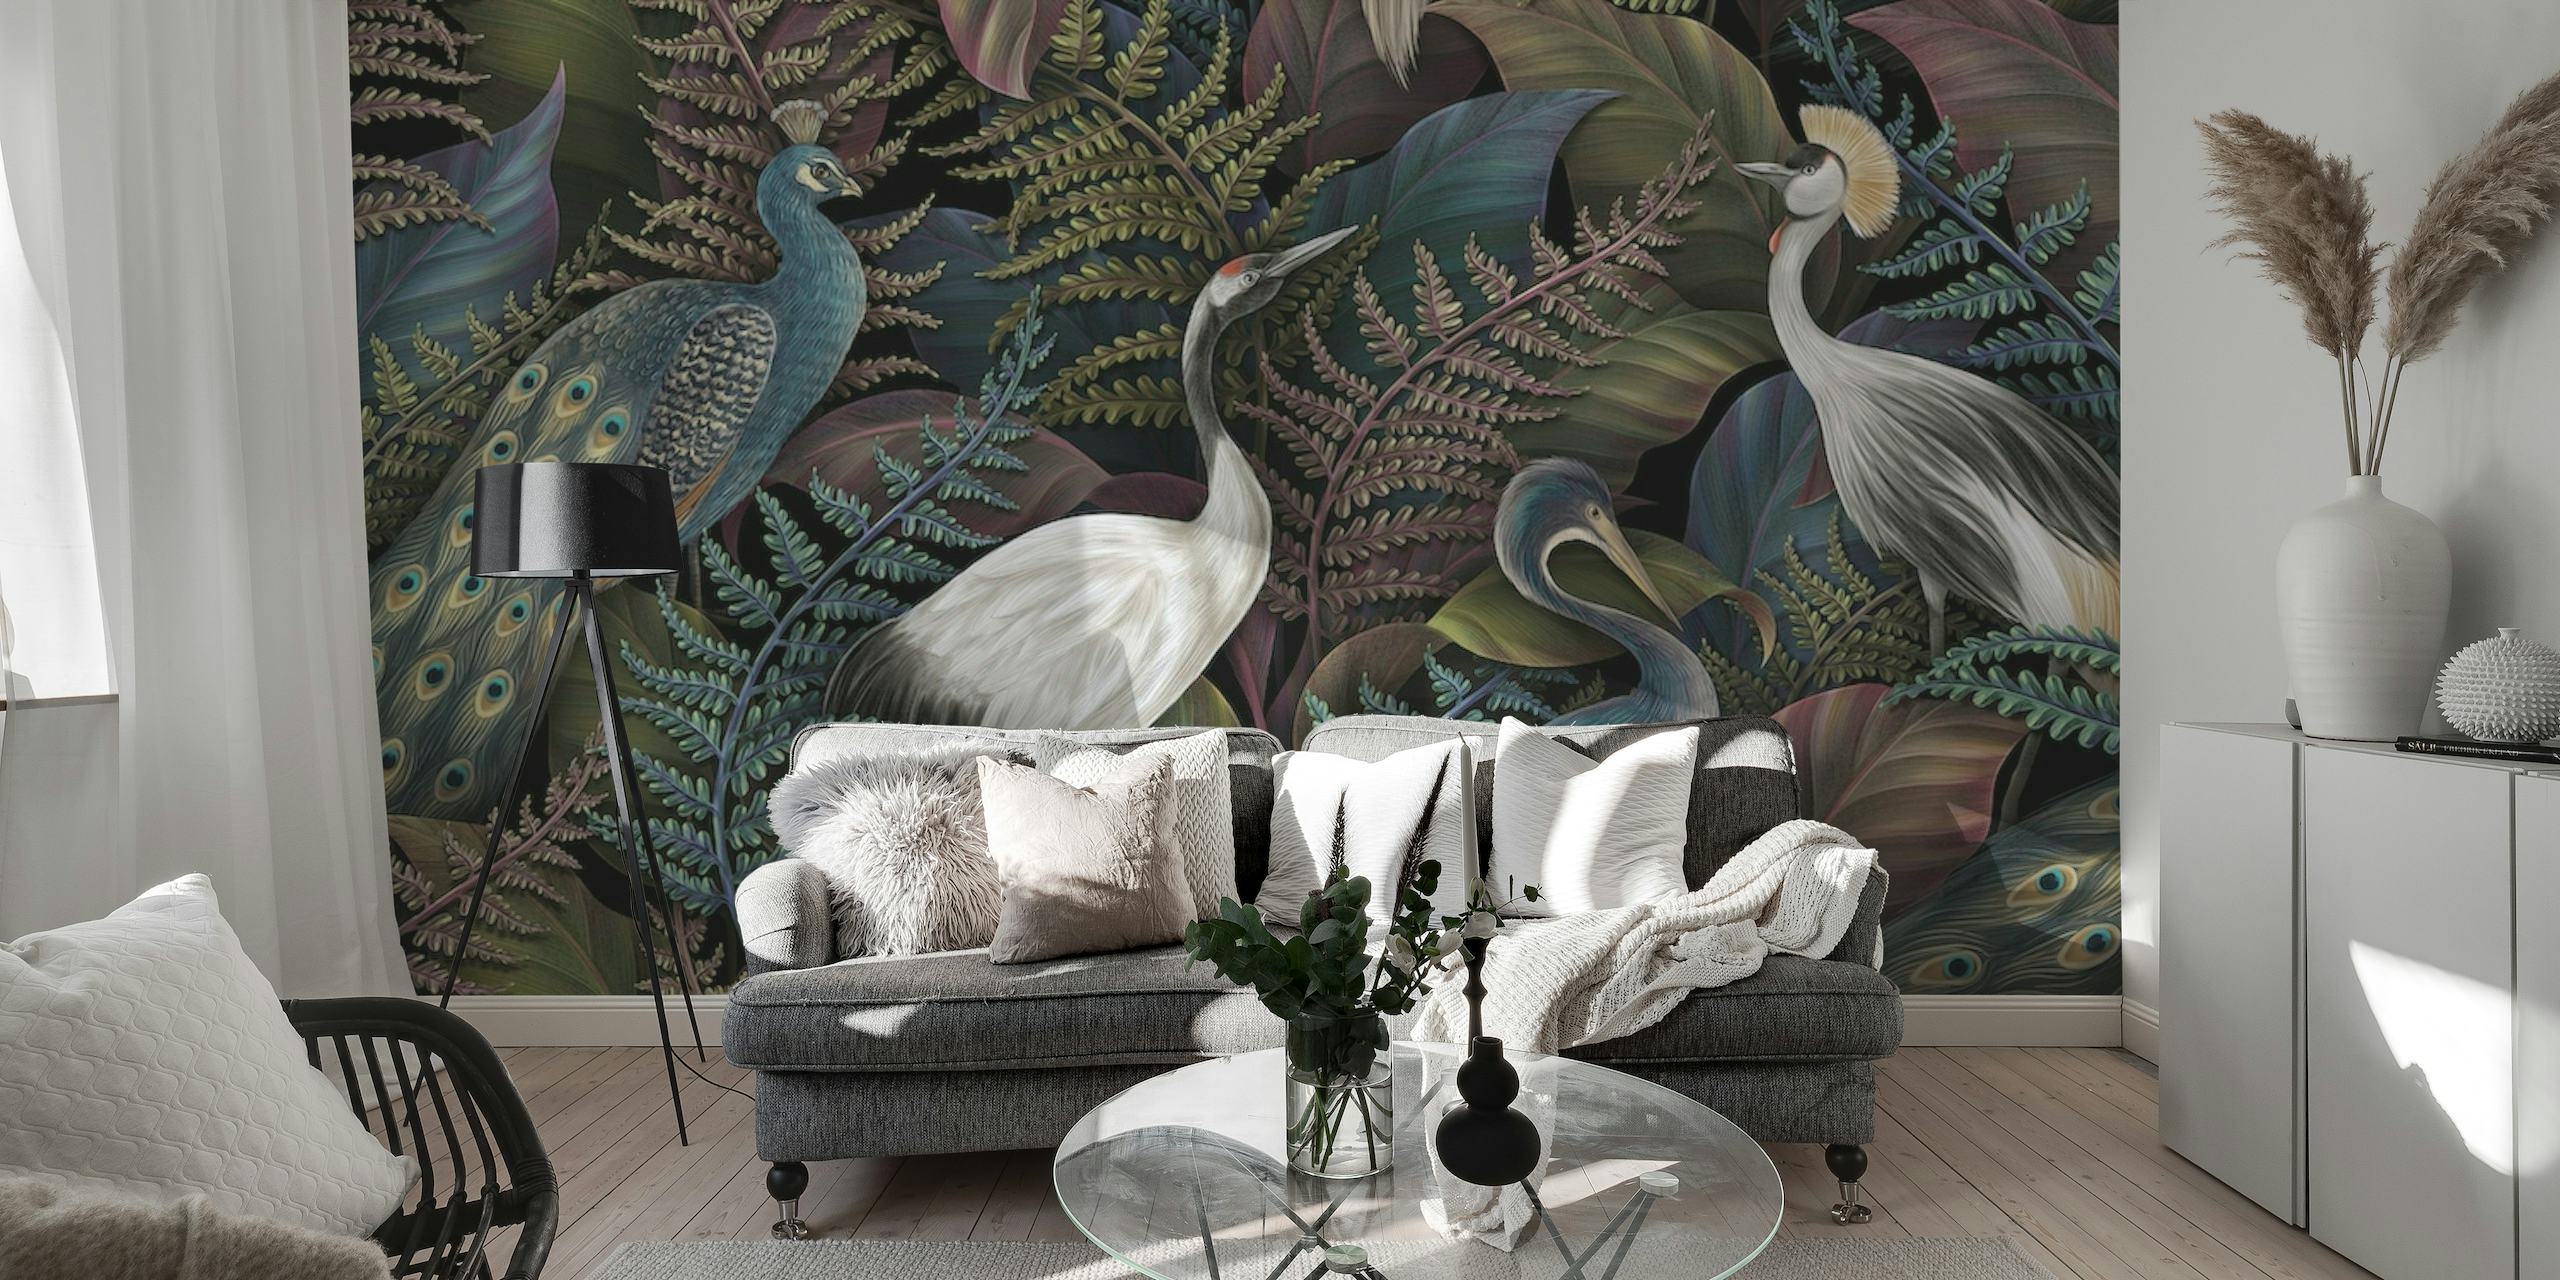 Um mural de parede sofisticado com pássaros elegantes e folhagens tropicais num cenário de selva densa.